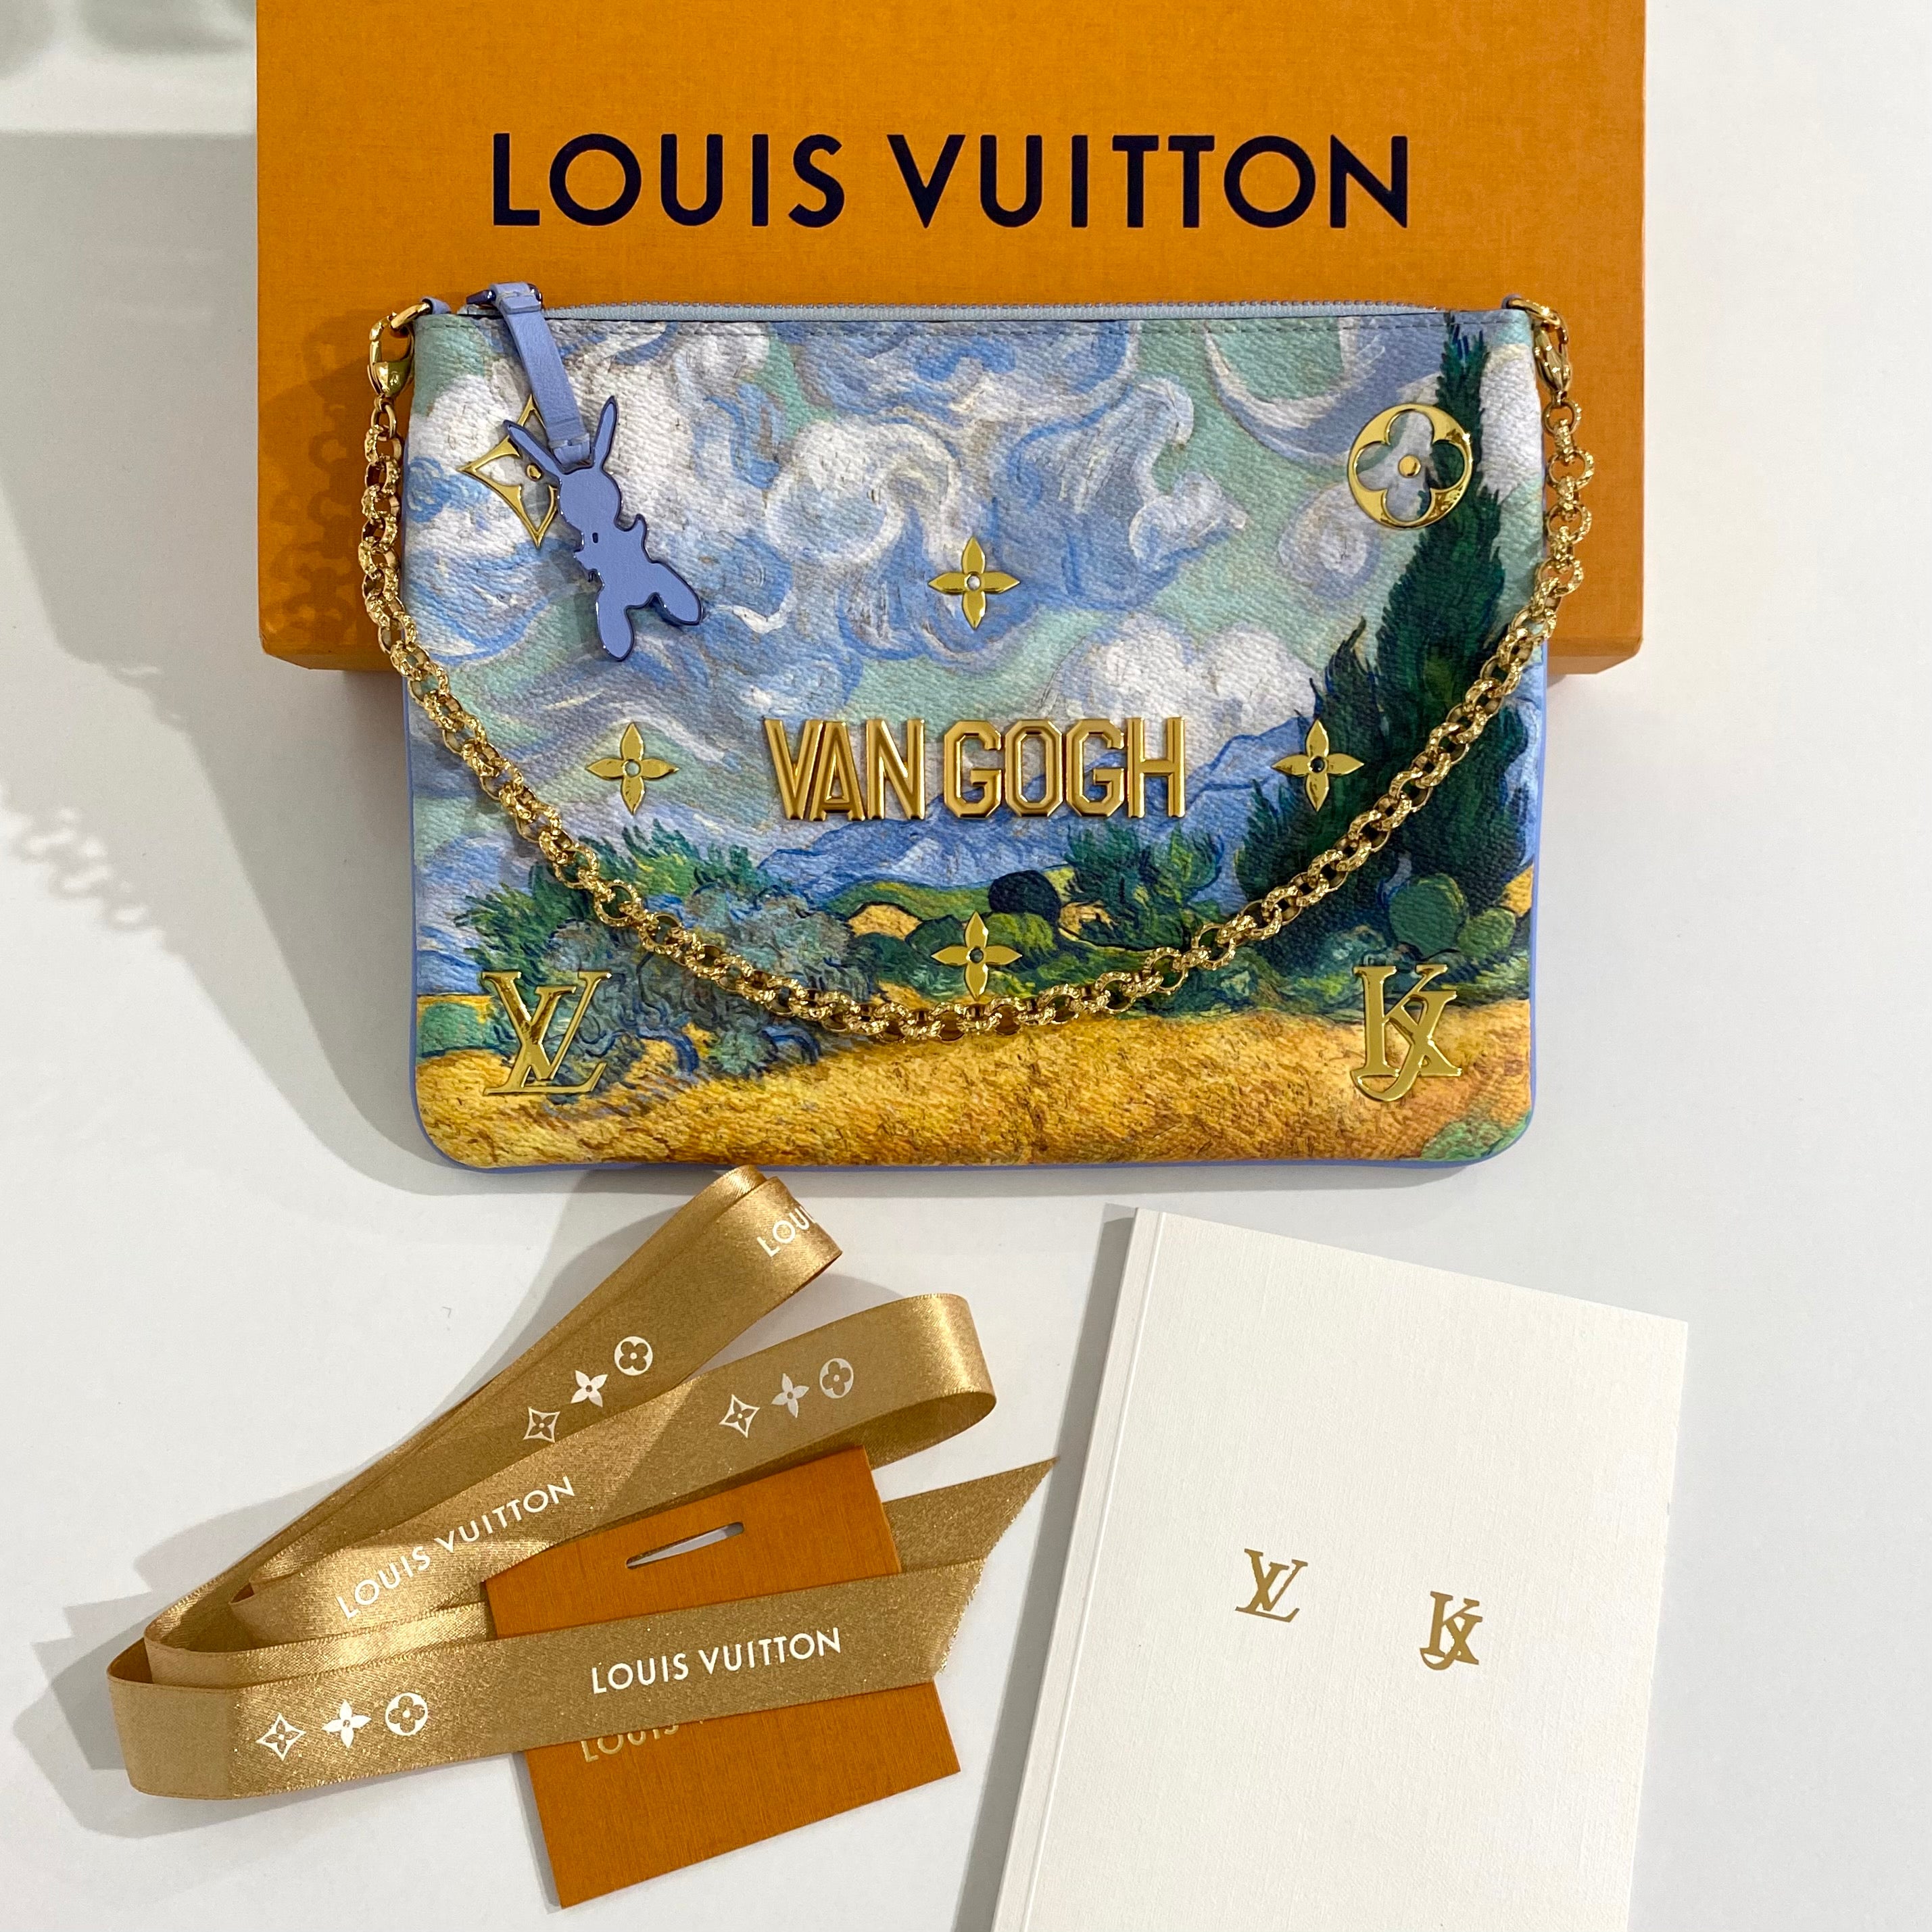 La nueva colaboración Louis Vuitton, Jeff Koons y ¿Da Vinci?